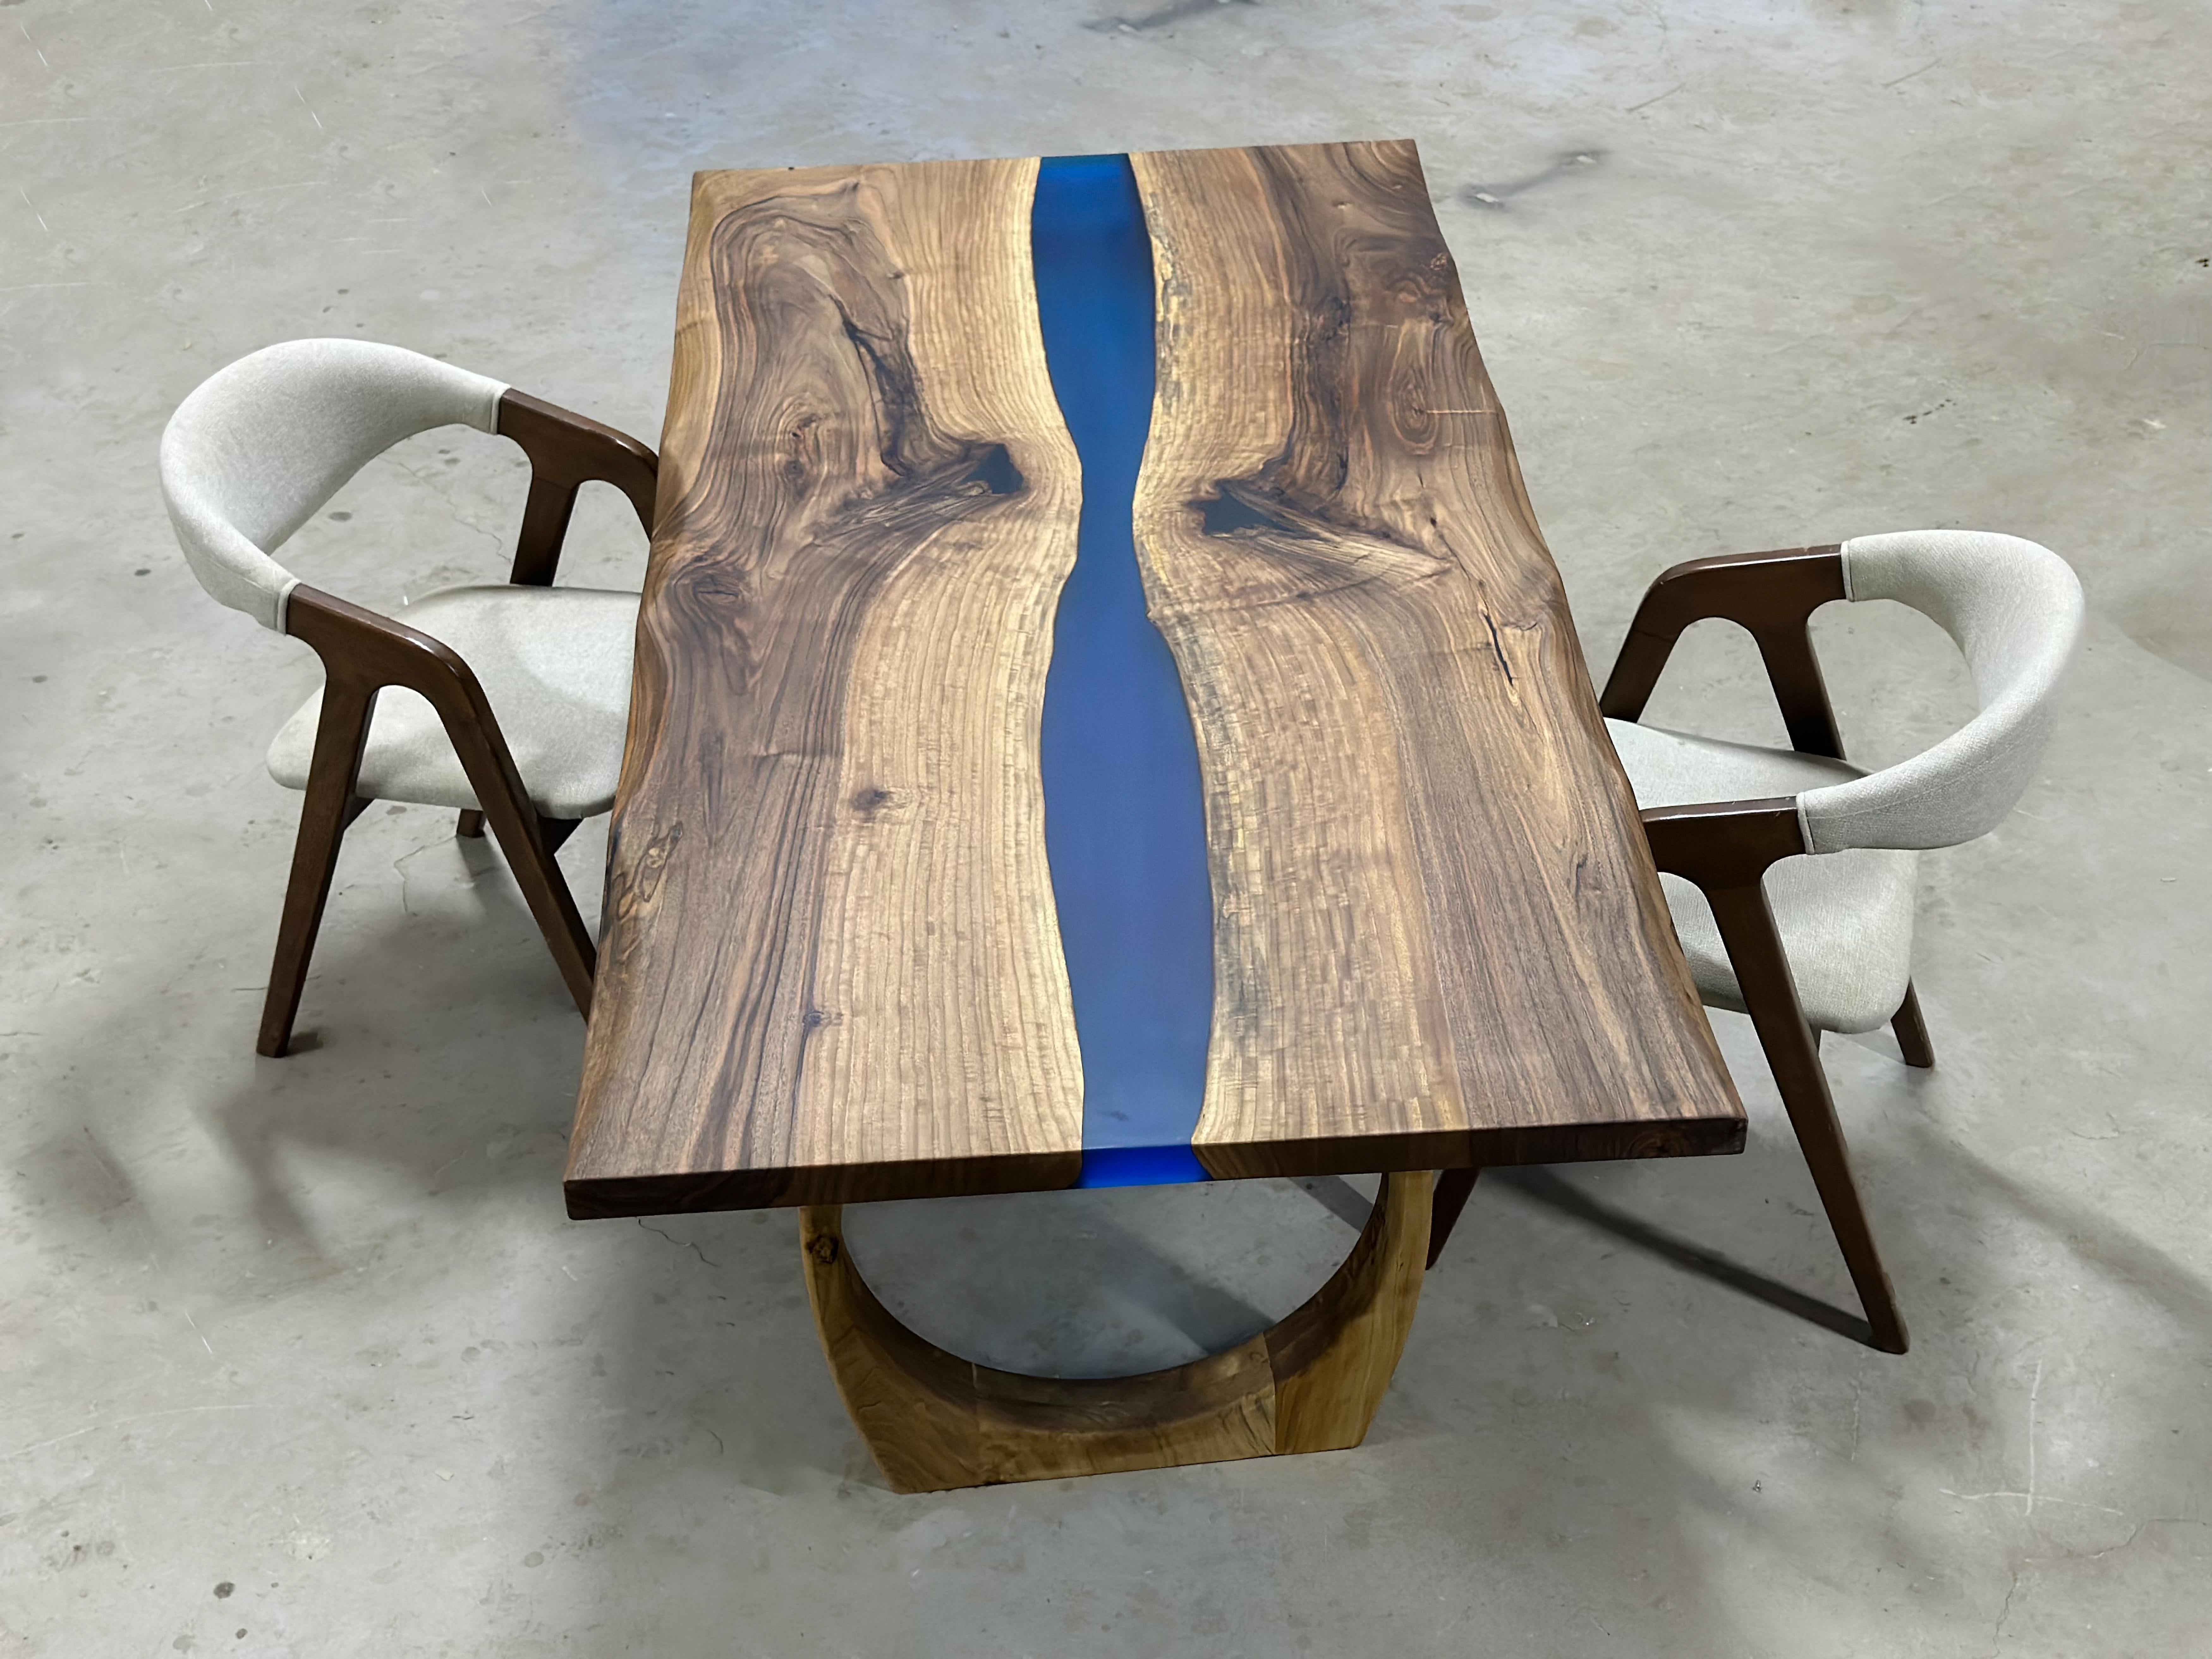 Table de salle à manger en résine époxy bleu noyer

Cette table est fabriquée en bois de noyer et en époxy noir transparent. 

Des tailles, des couleurs et des finitions personnalisées sont disponibles !